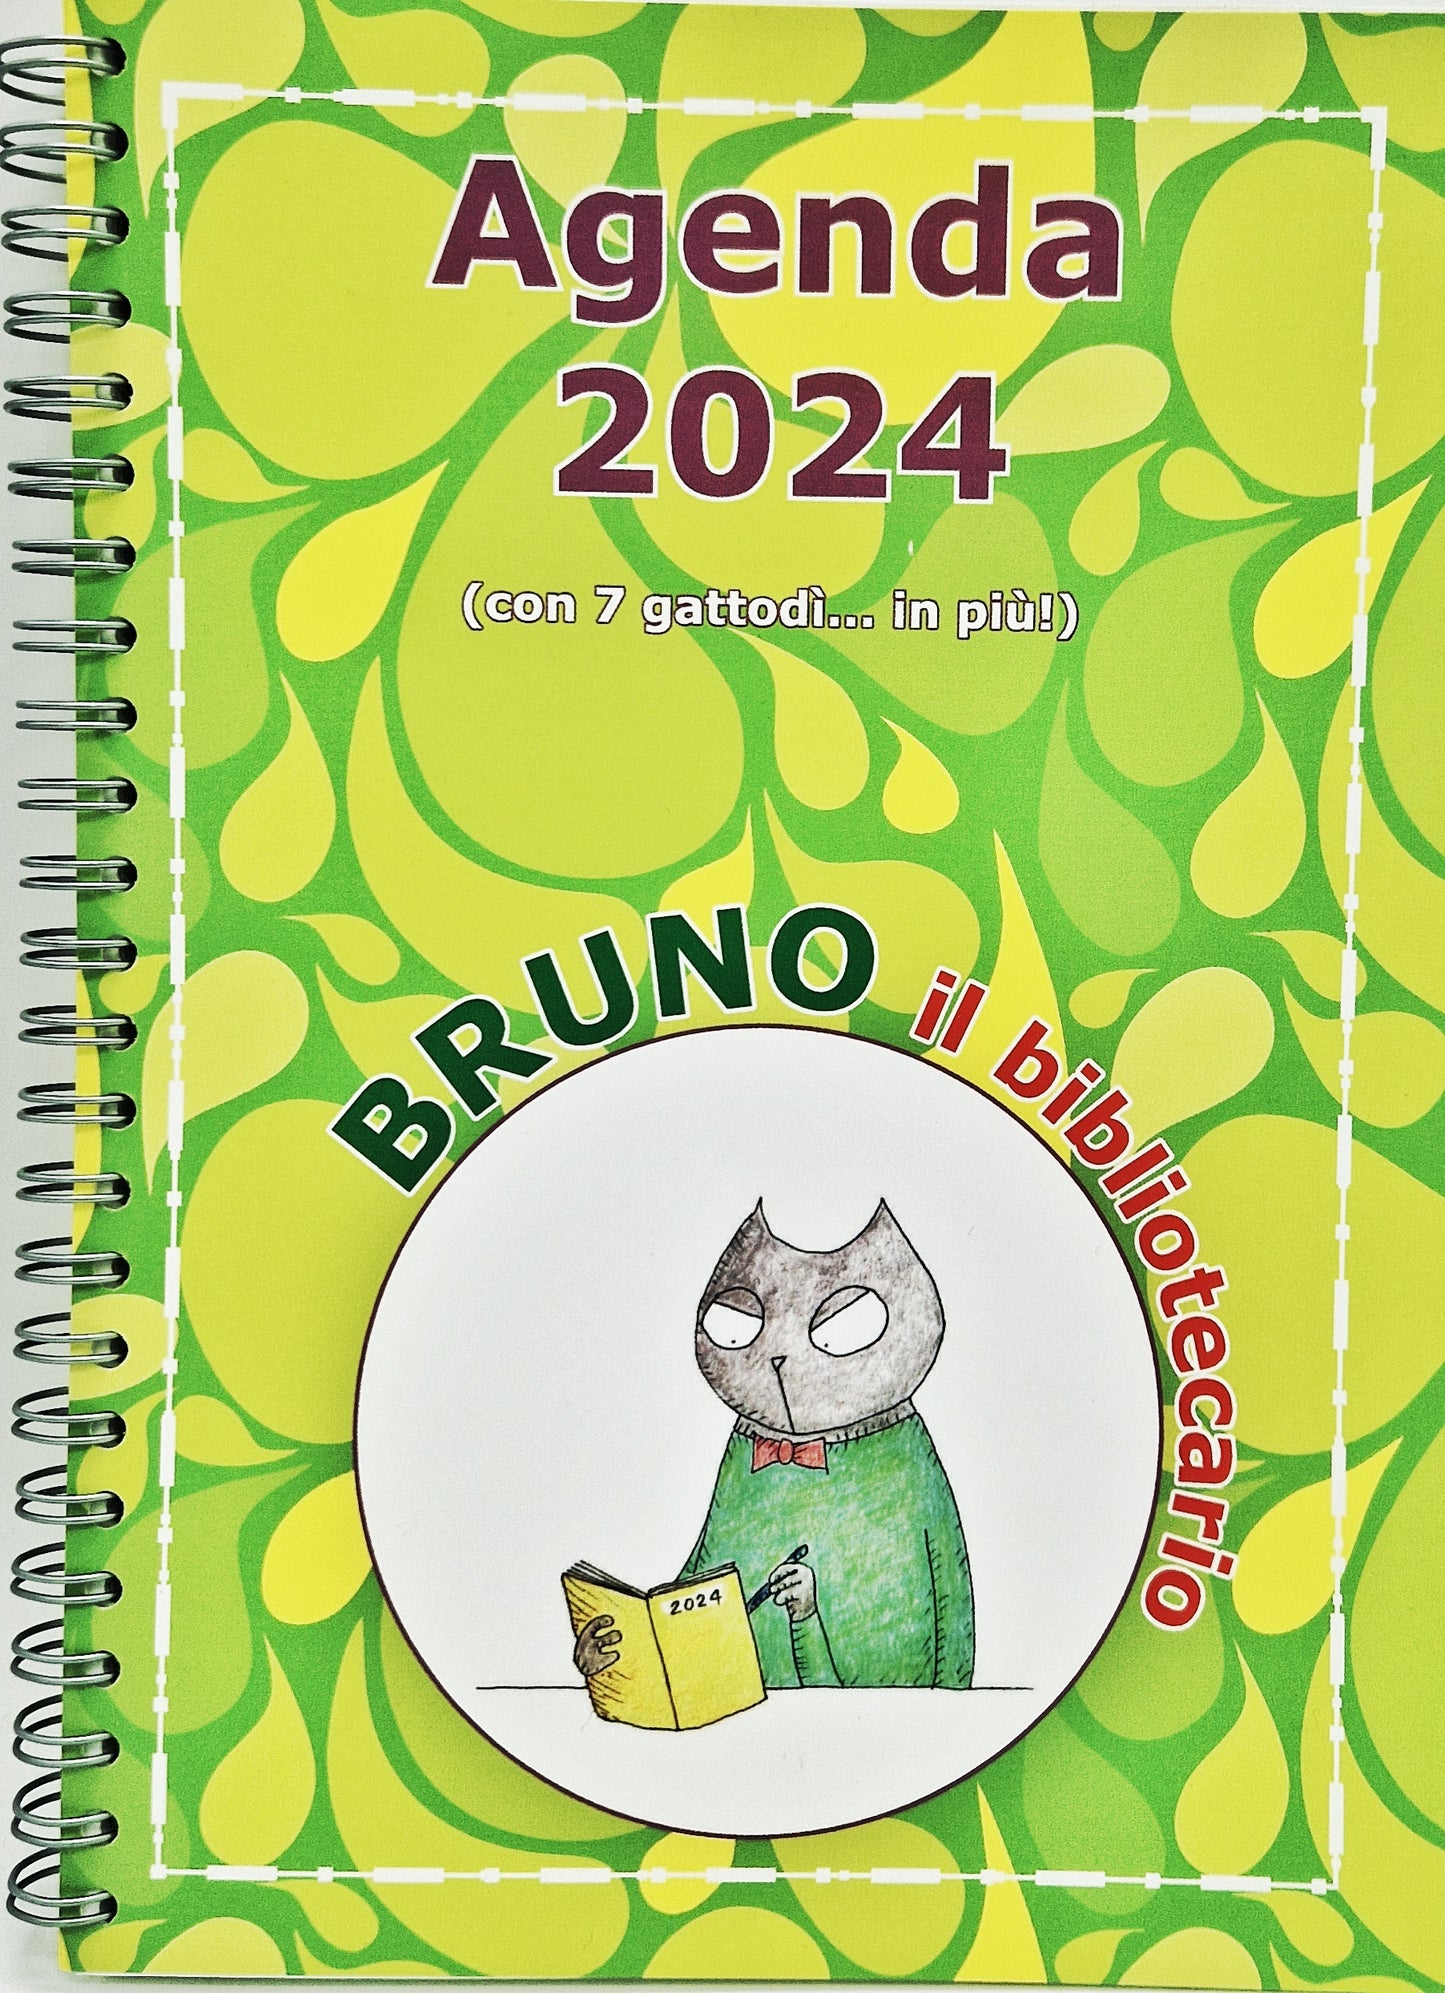 L'agenda 2024 di Bruno il bibliotecario – Centroscuola